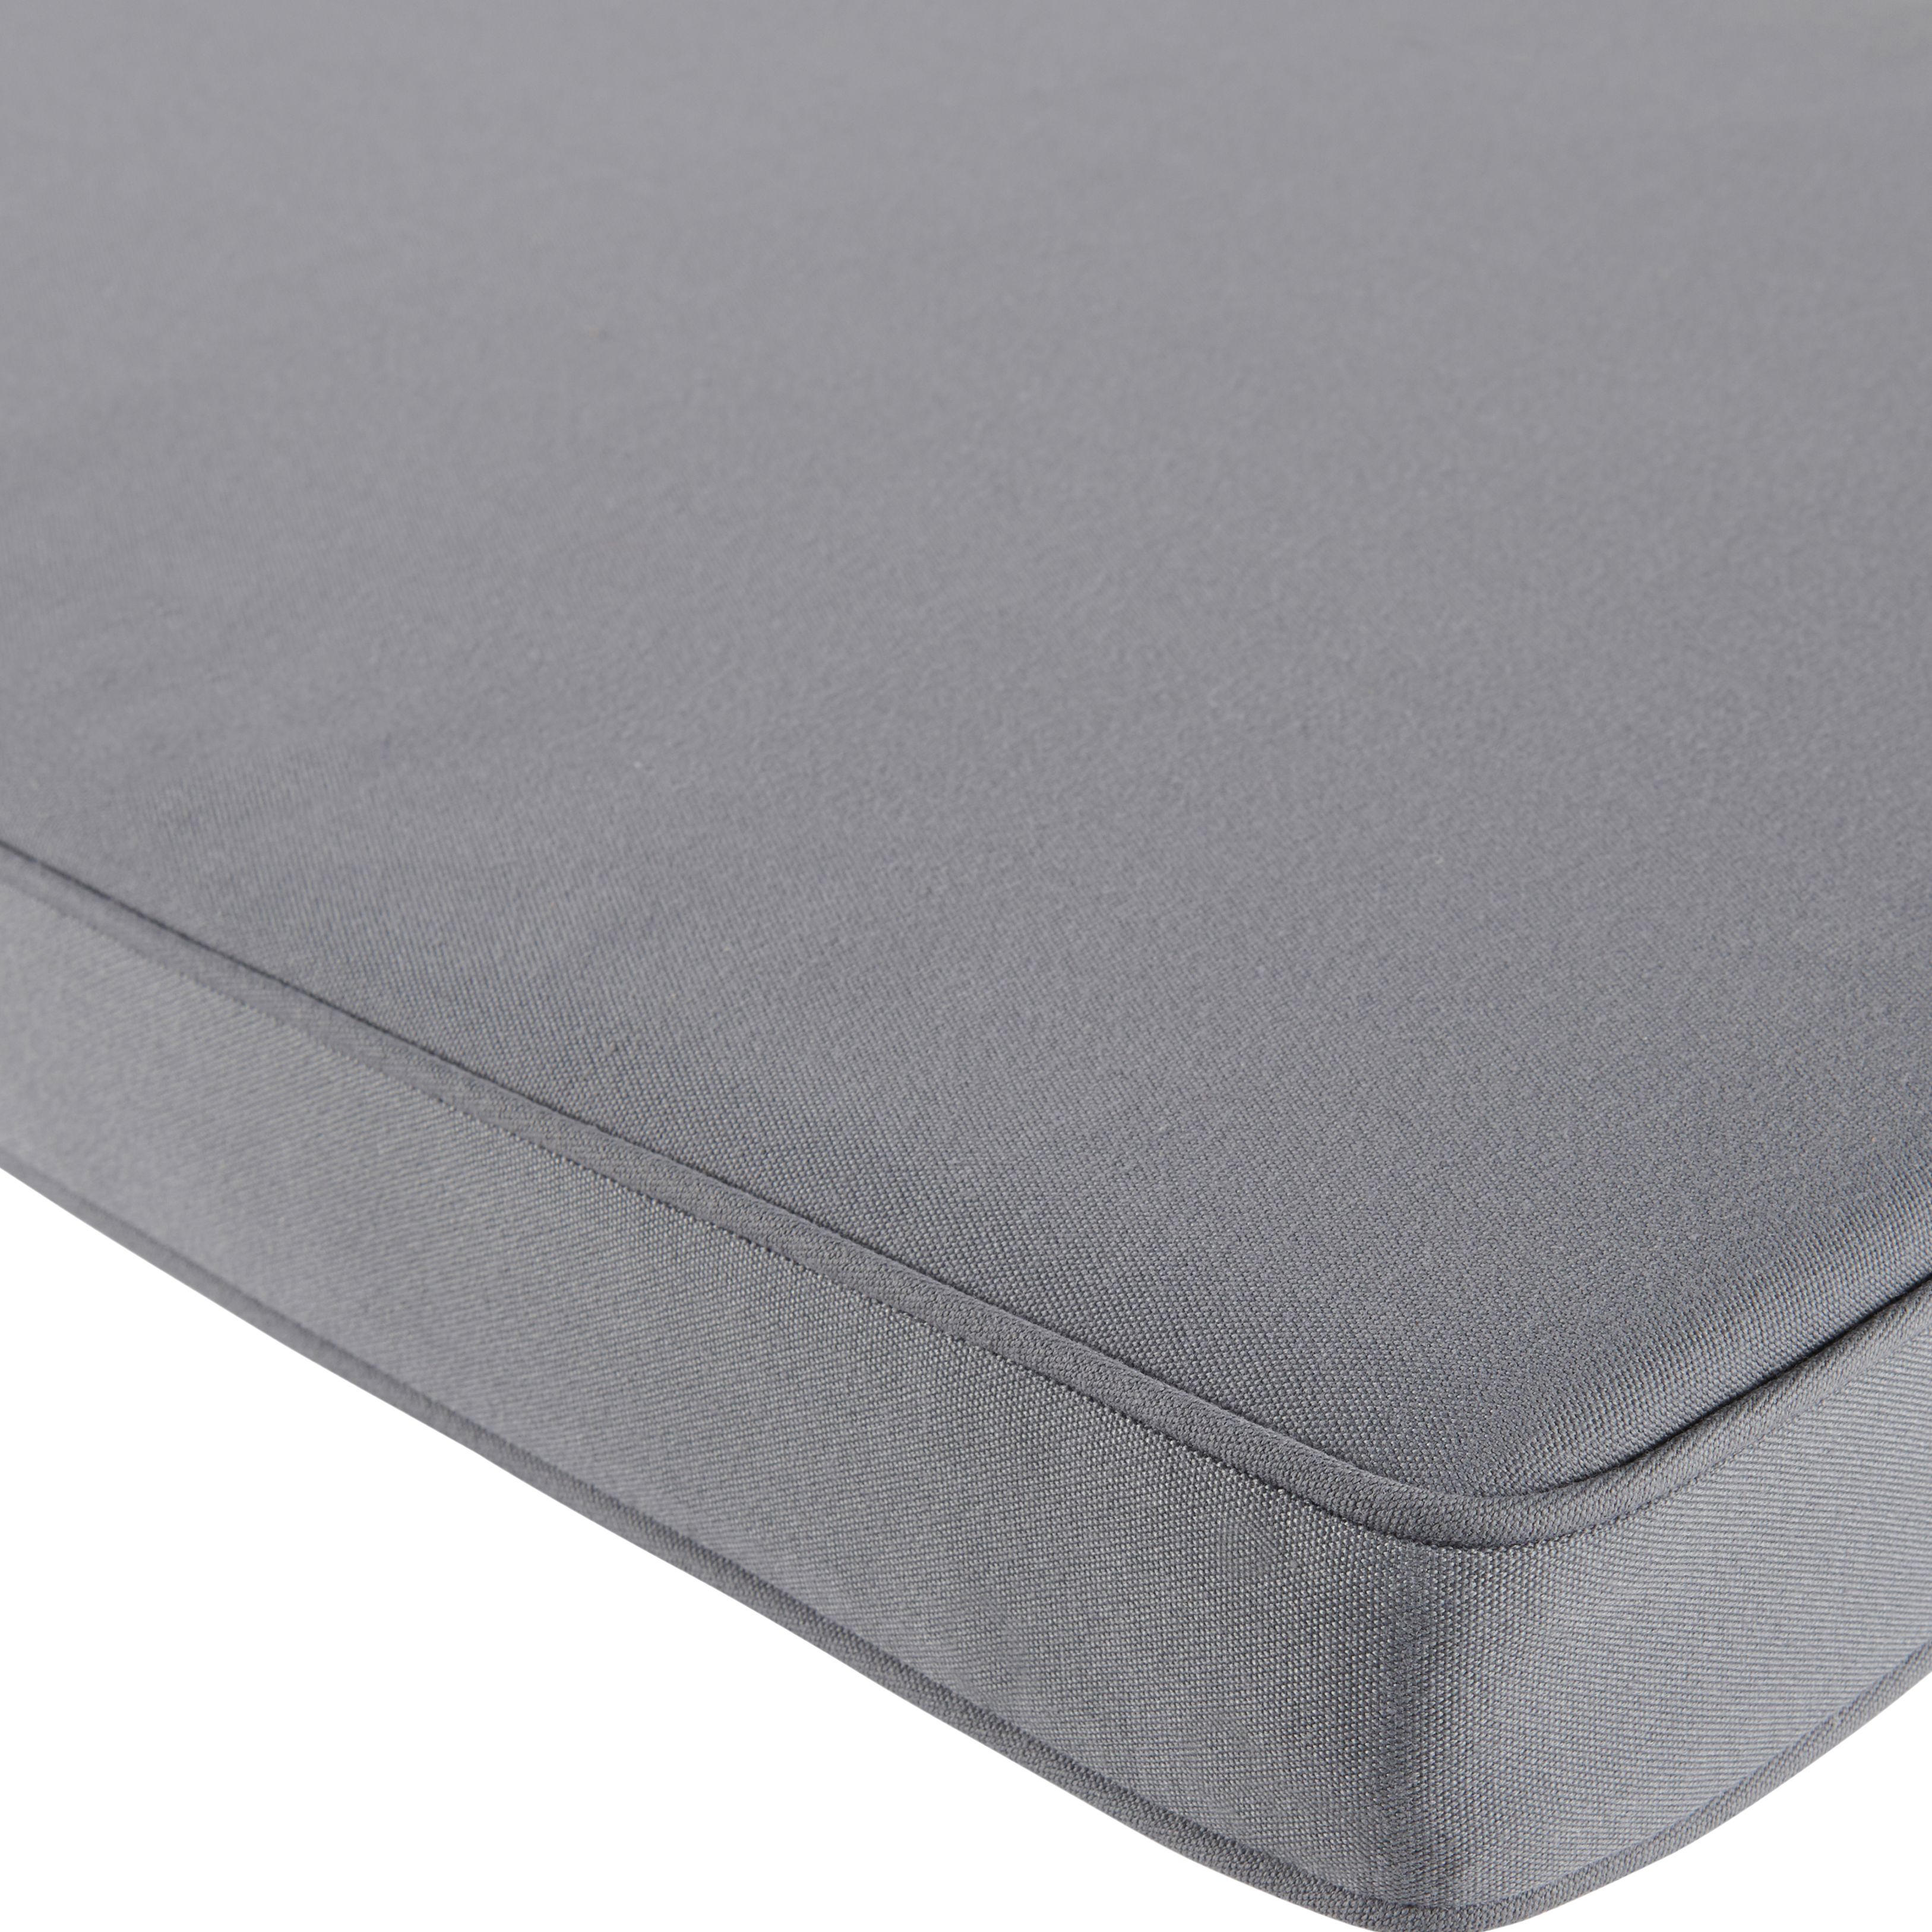 GoodHome Tiga Steel grey Outdoor Bench cushion